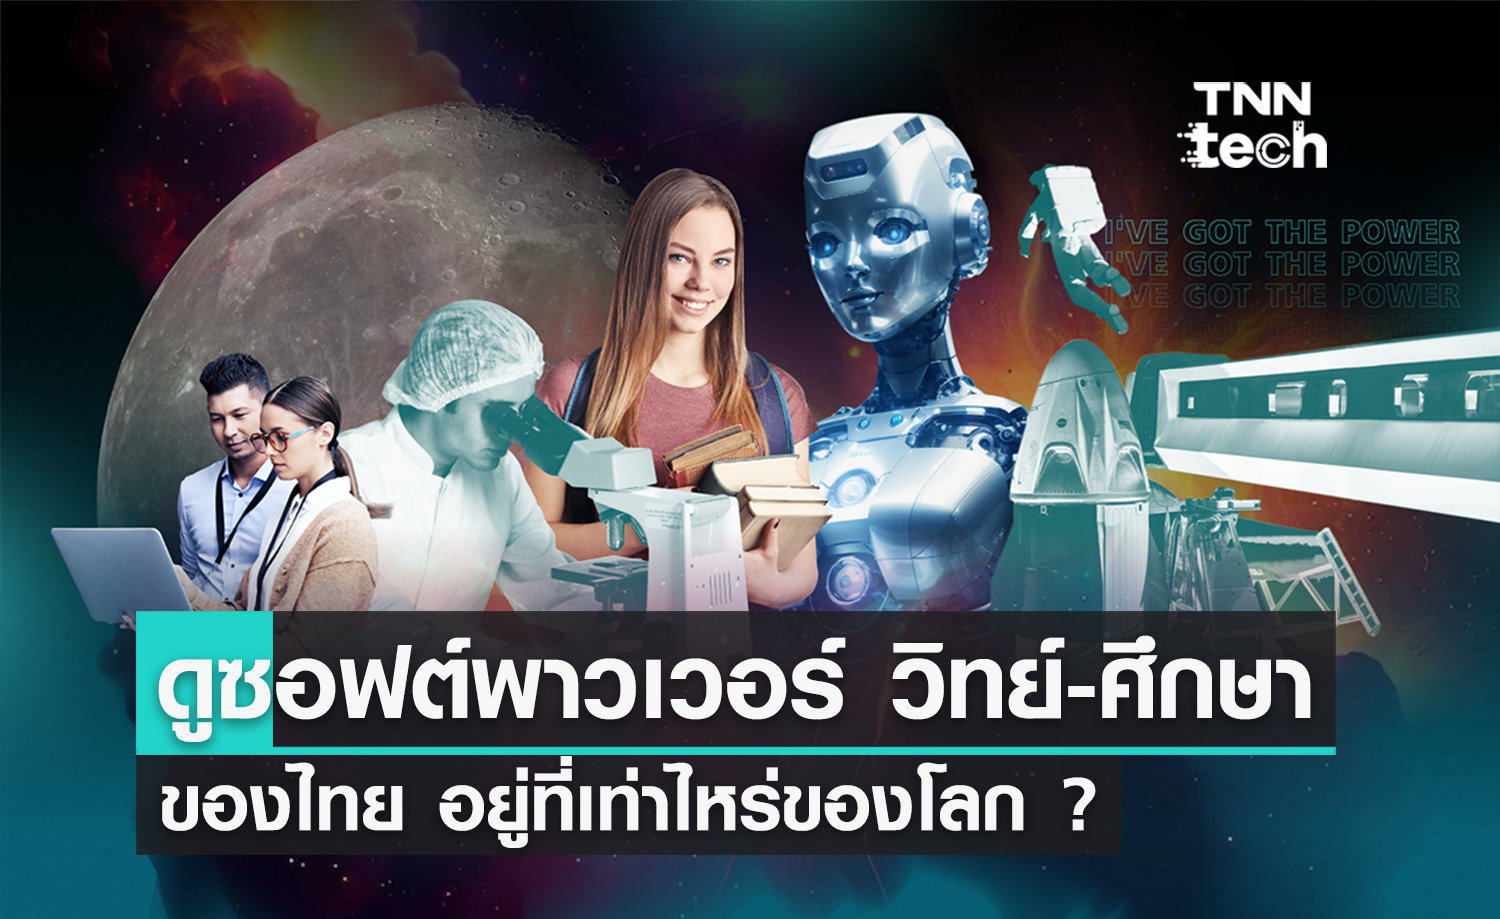 อันดับซอฟต์พาวเวอร์ (Soft Power) ด้านวิทยาศาสตร์และการศึกษาไทย อยู่ที่เท่าไหร่ของโลก